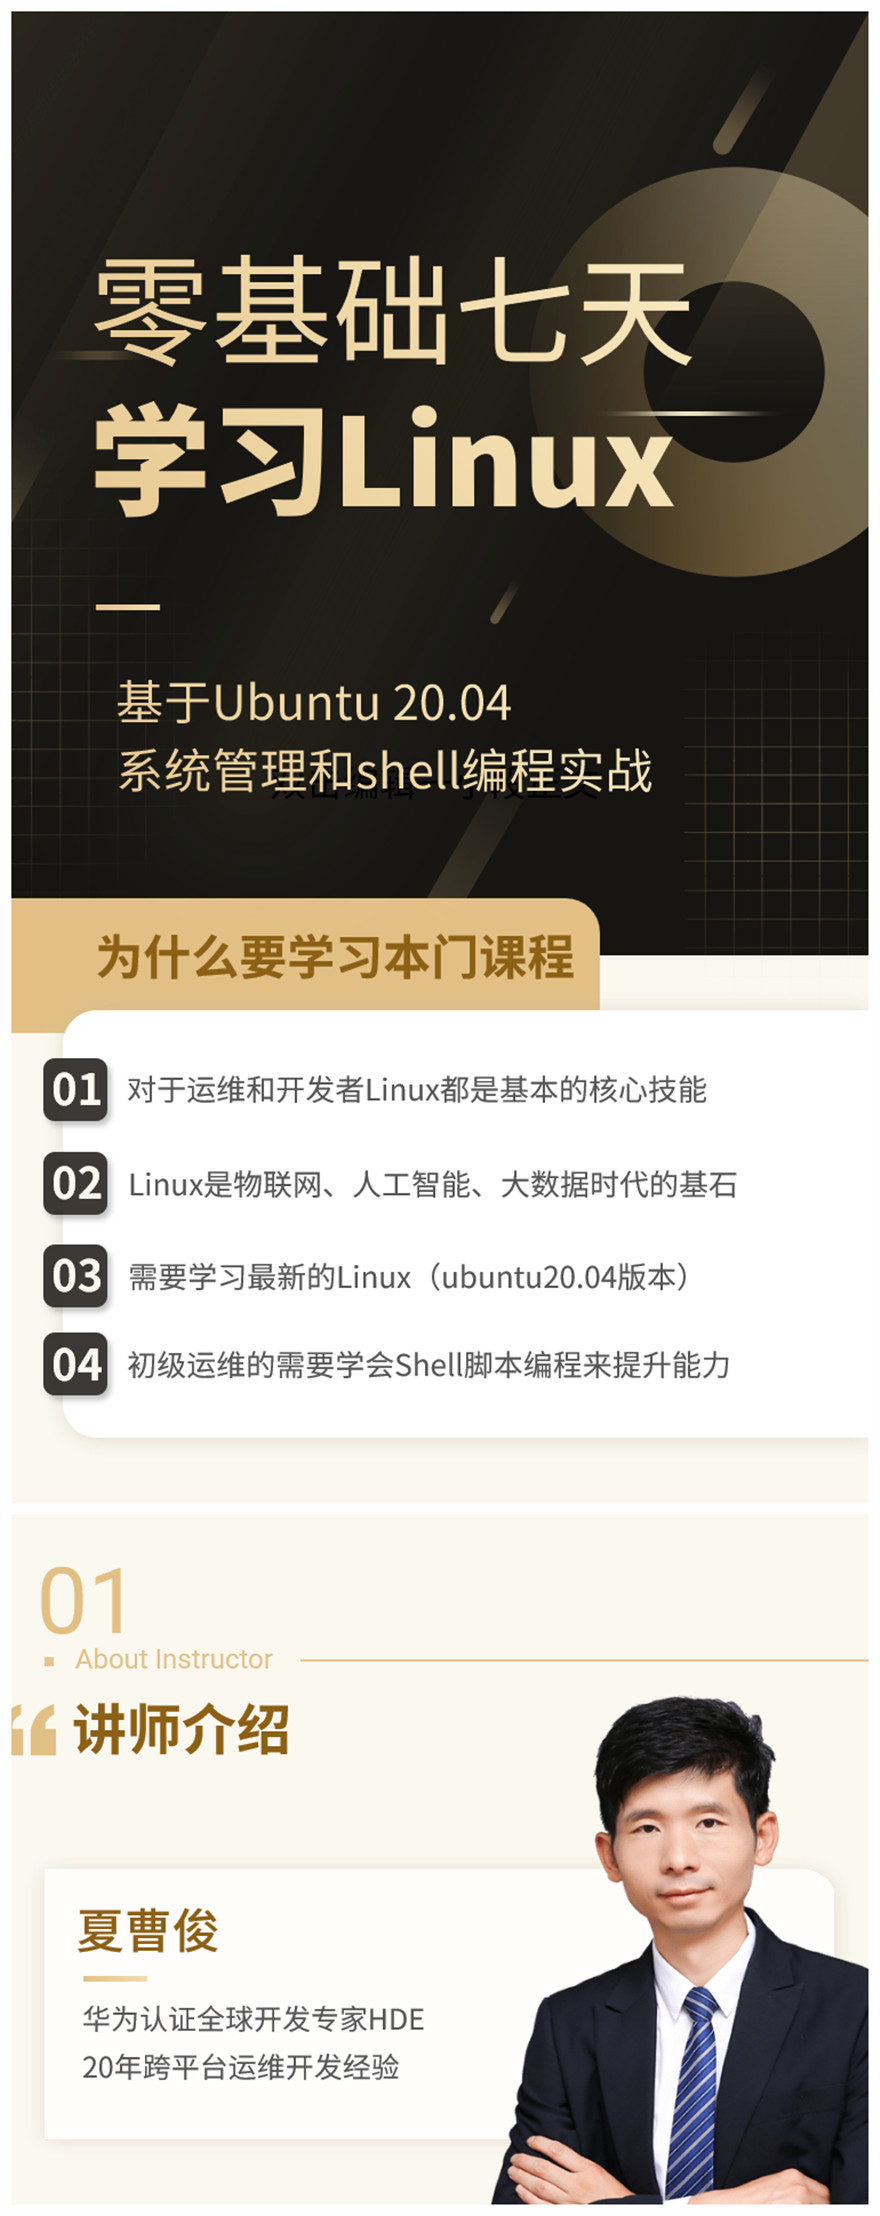 零基础七天学习Linux课程详情页-1.jpg